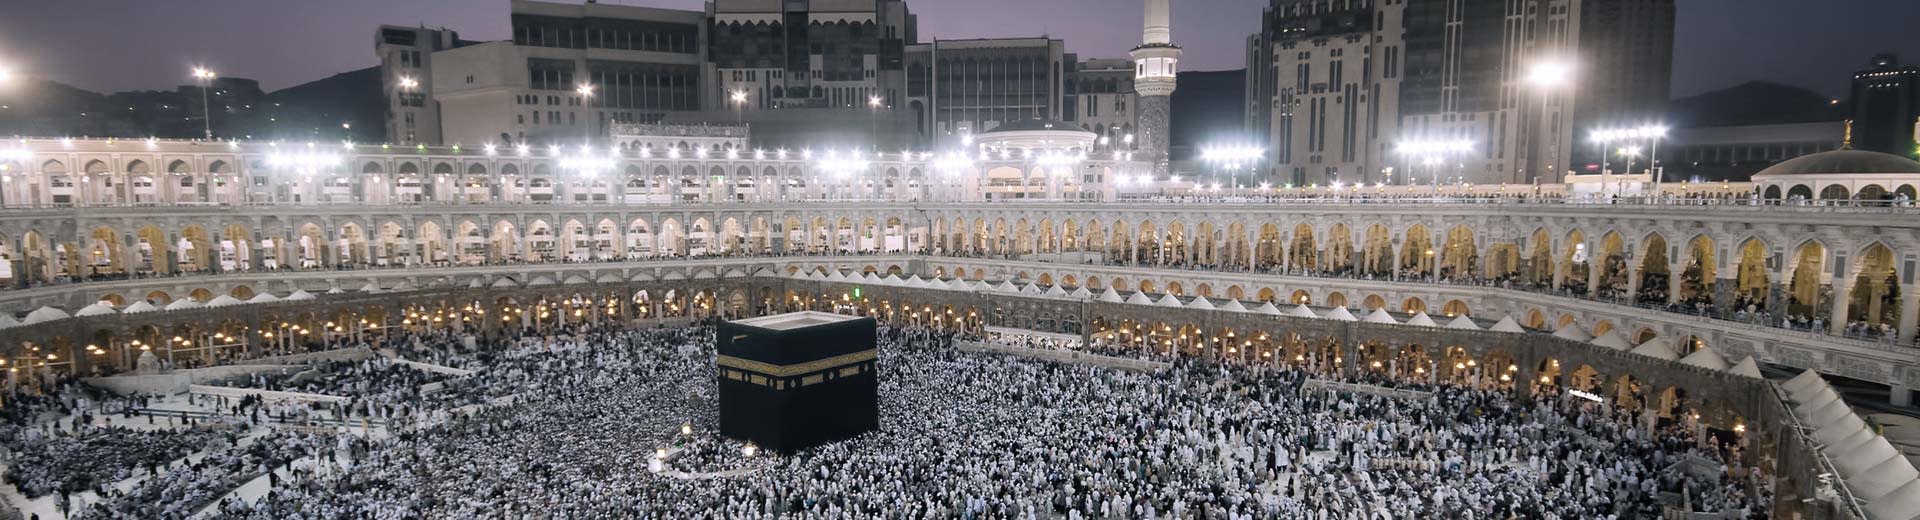 La célèbre Kaaba à la Mecque la nuit, entourée de fidèles.